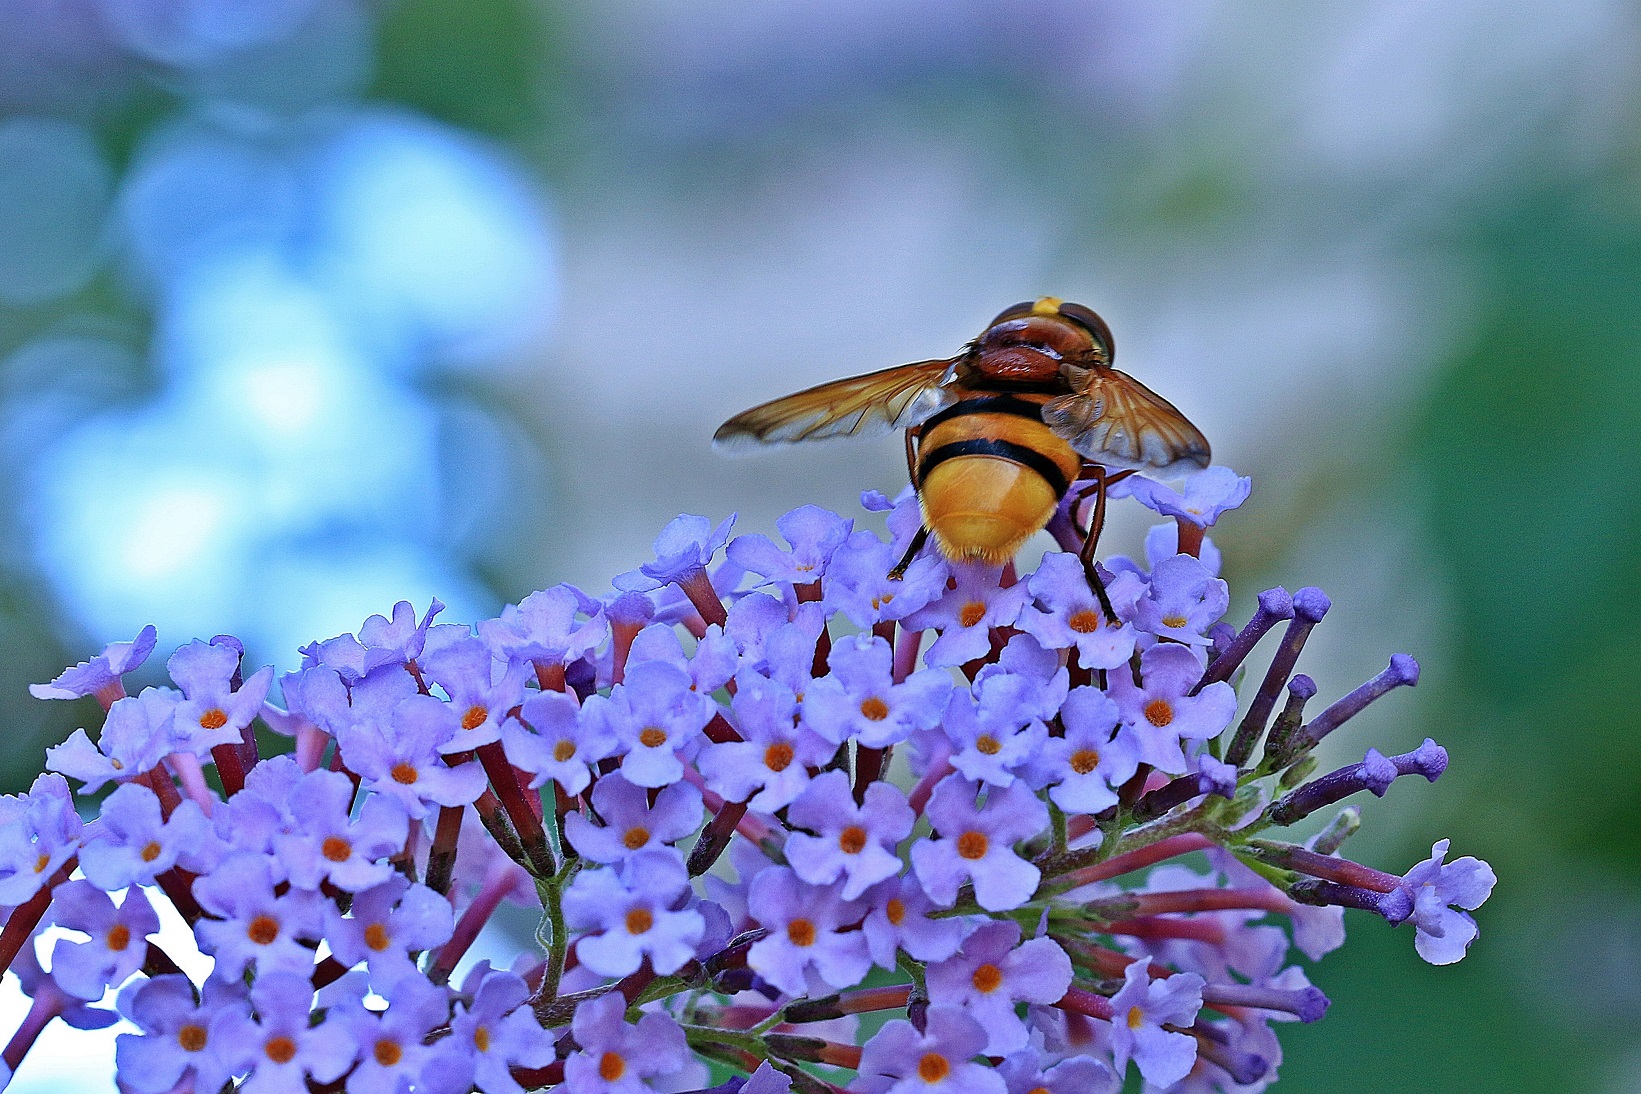 Triste y grave: Las abejas cada vez tienen menos alimentos para subsistir